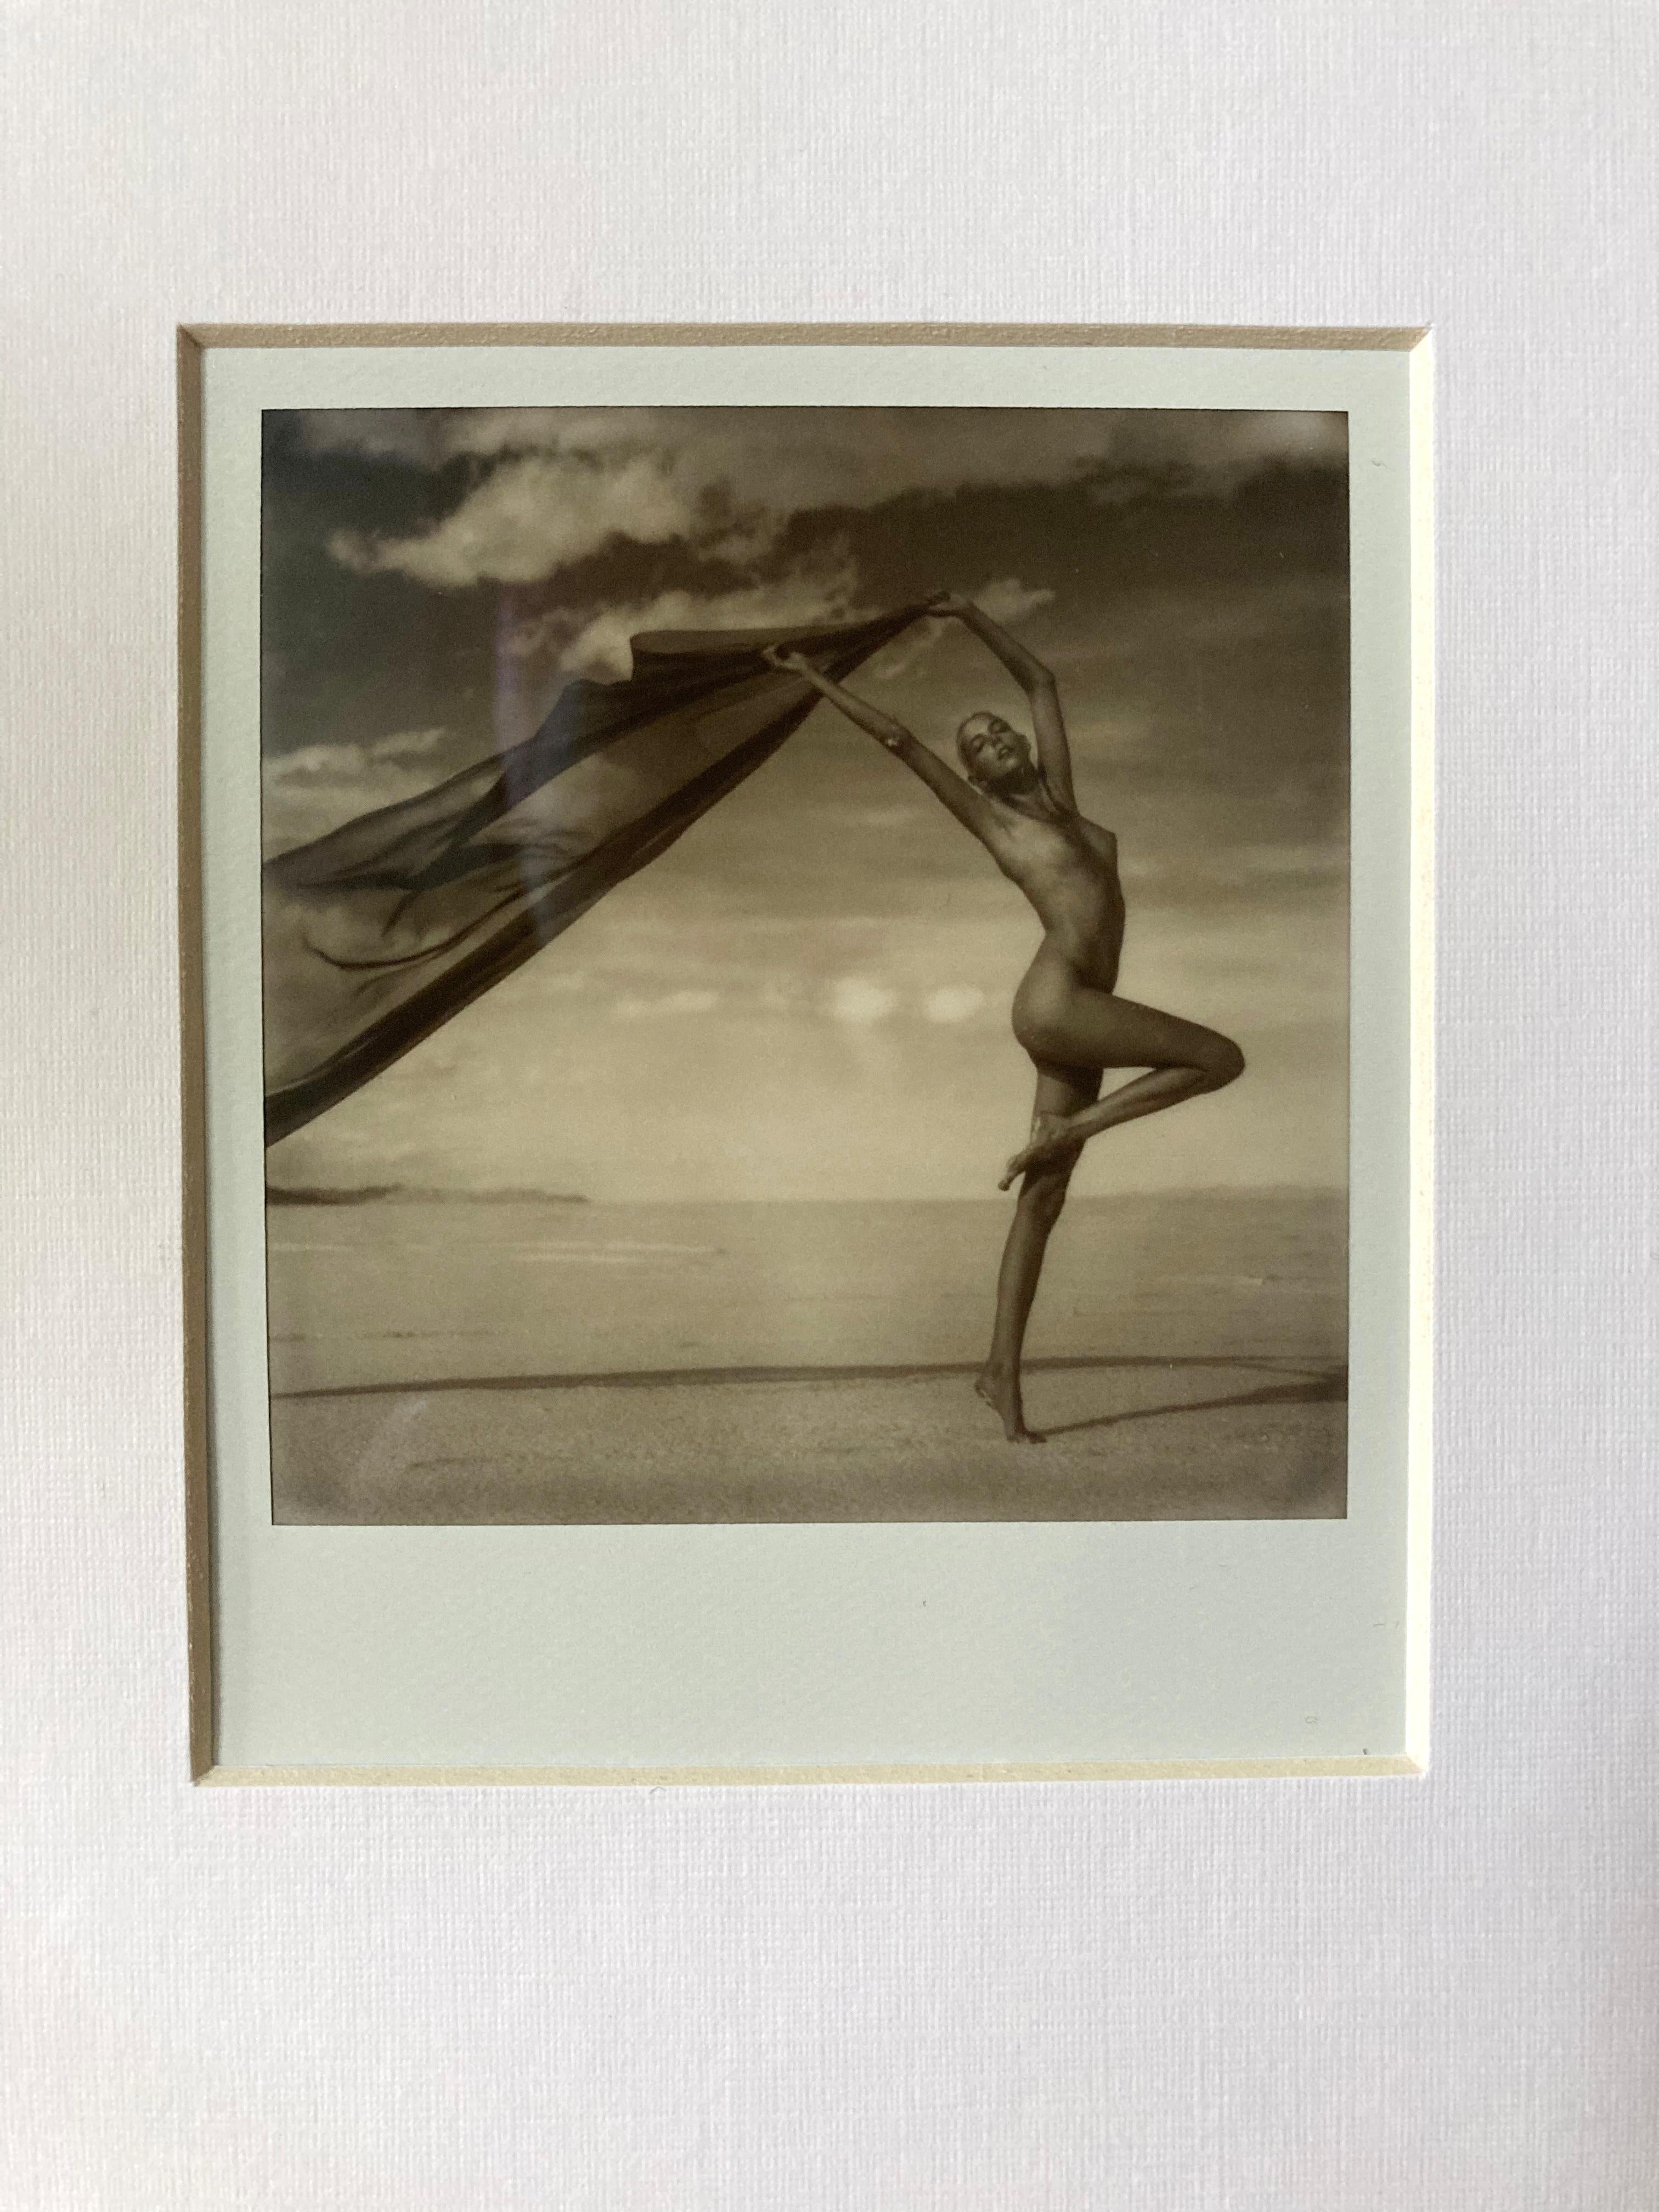 Synchronicity -  Original Polaroid - Unique Piece - Photograph by Kirsten Thys van den Audenaerde